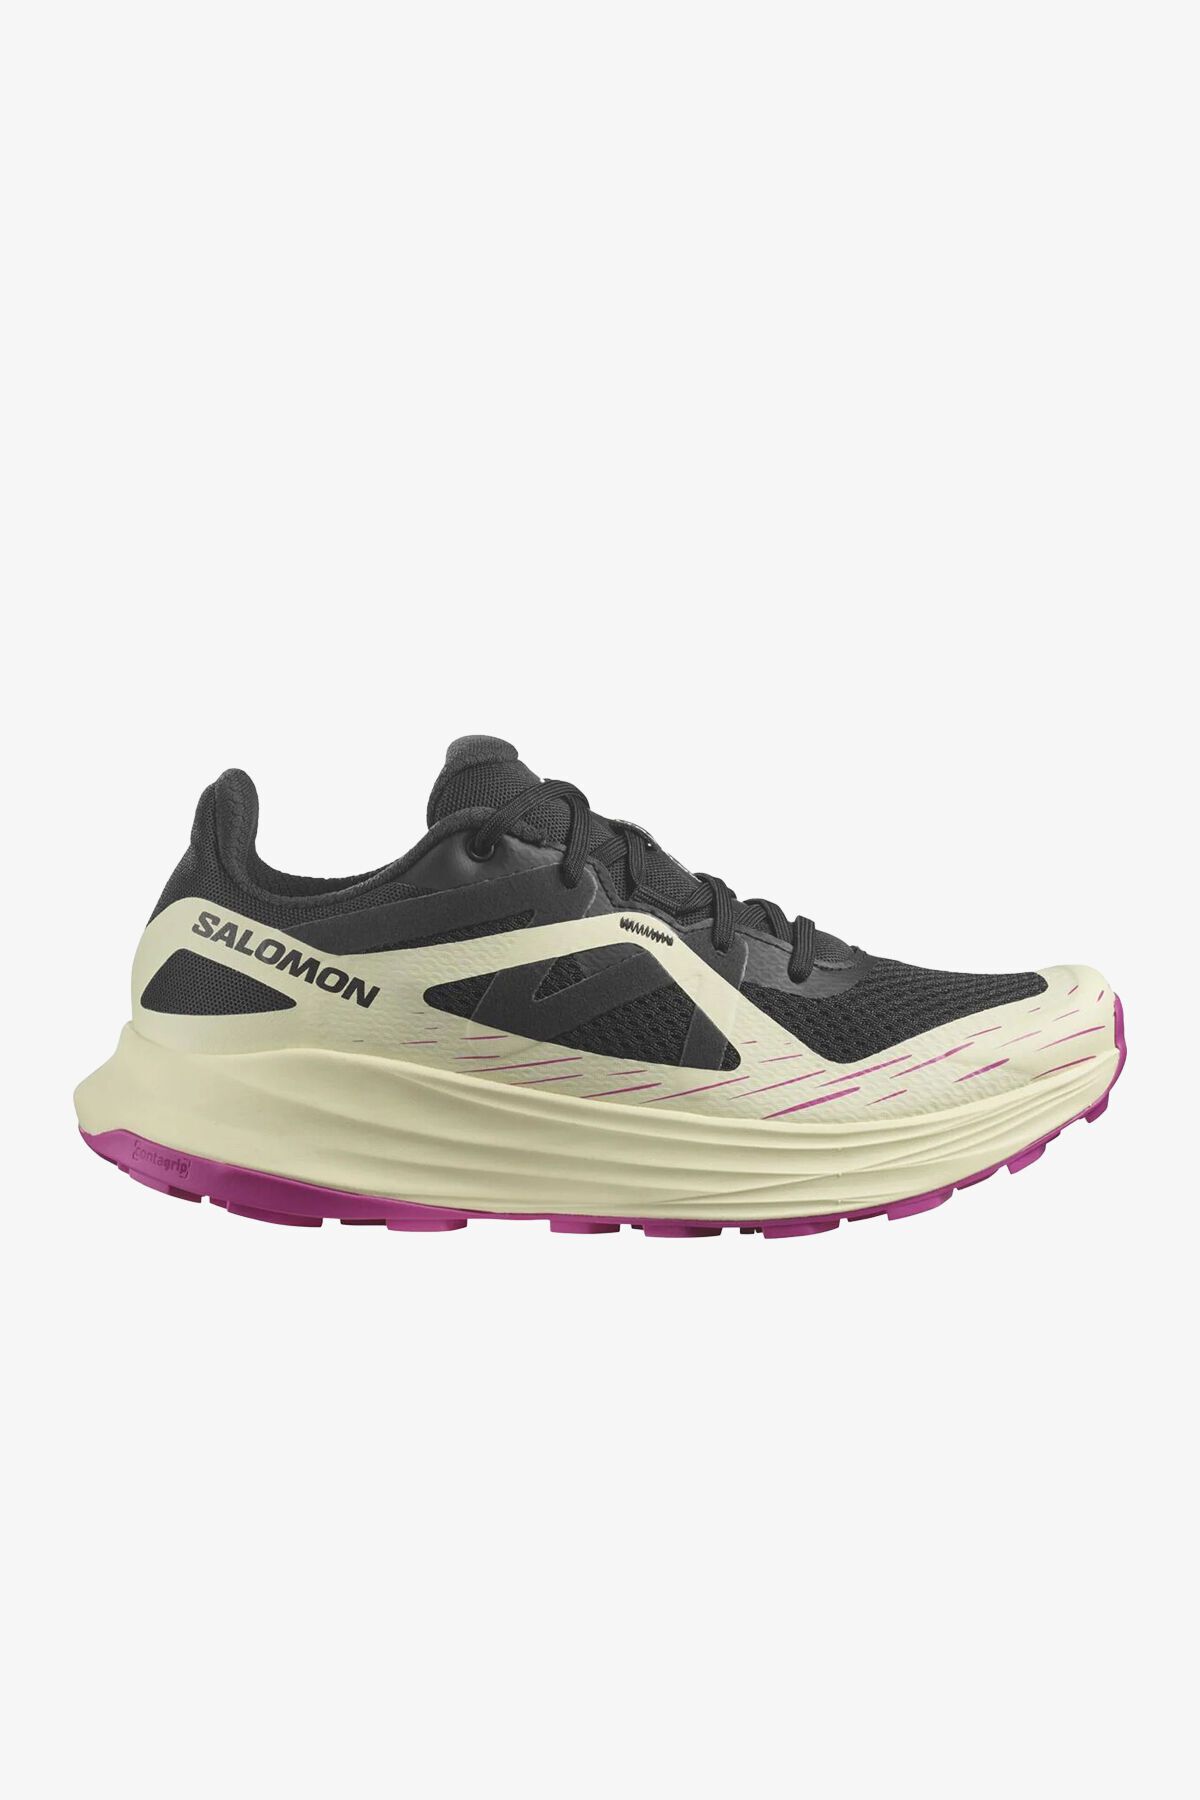 Salomon Ultra Flow W Kadın Bej Patika Koşu Ayakkabısı L47450900-4505